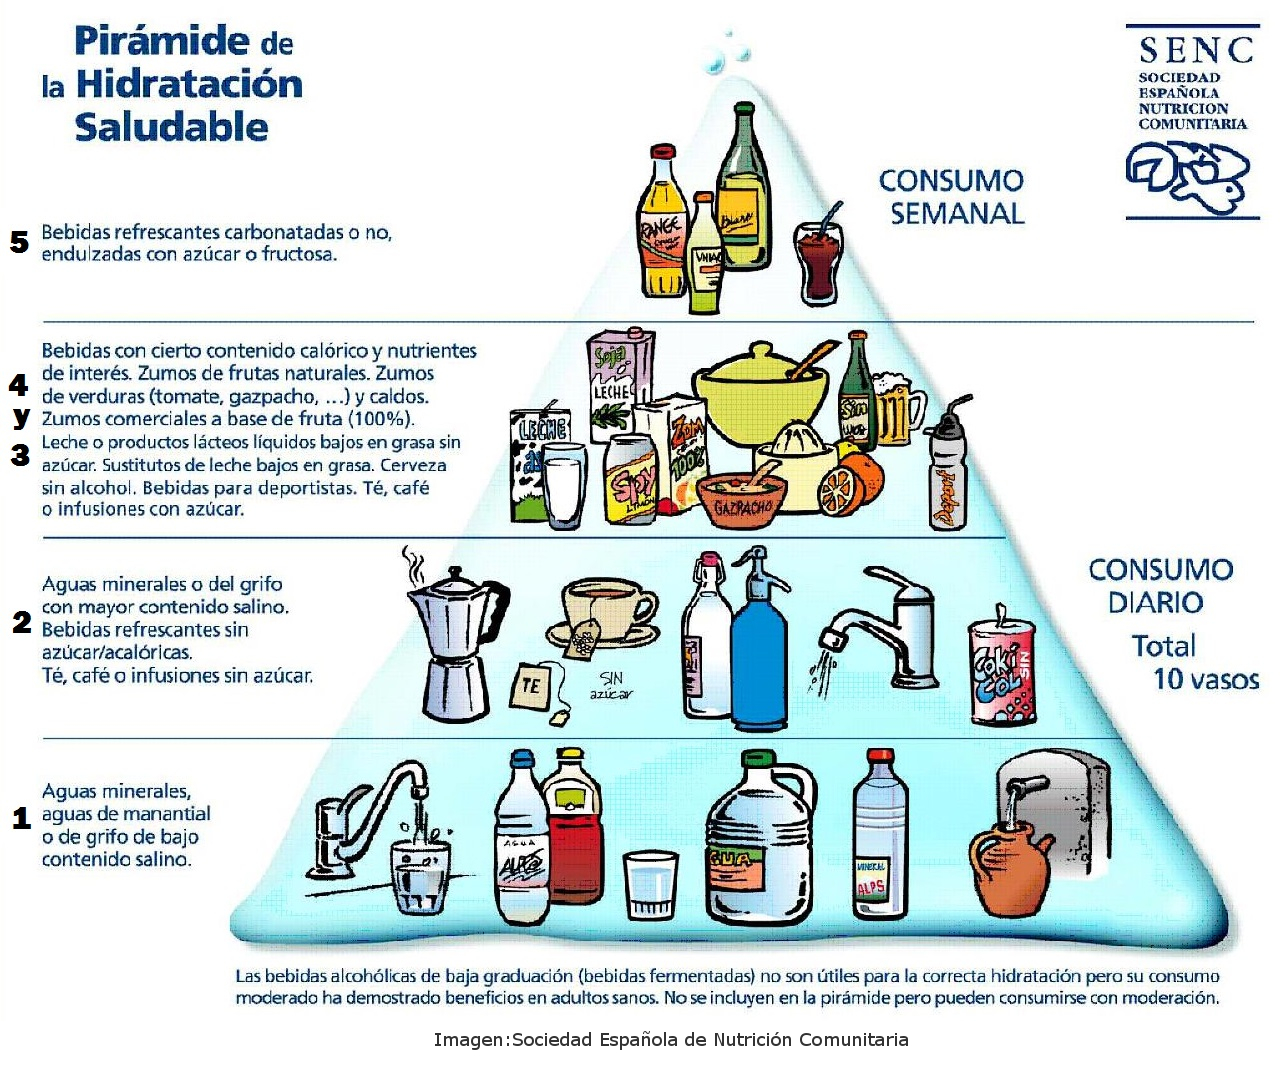 Pirámide de hidratación saludable. Sociedad española de nutrición comunitaria